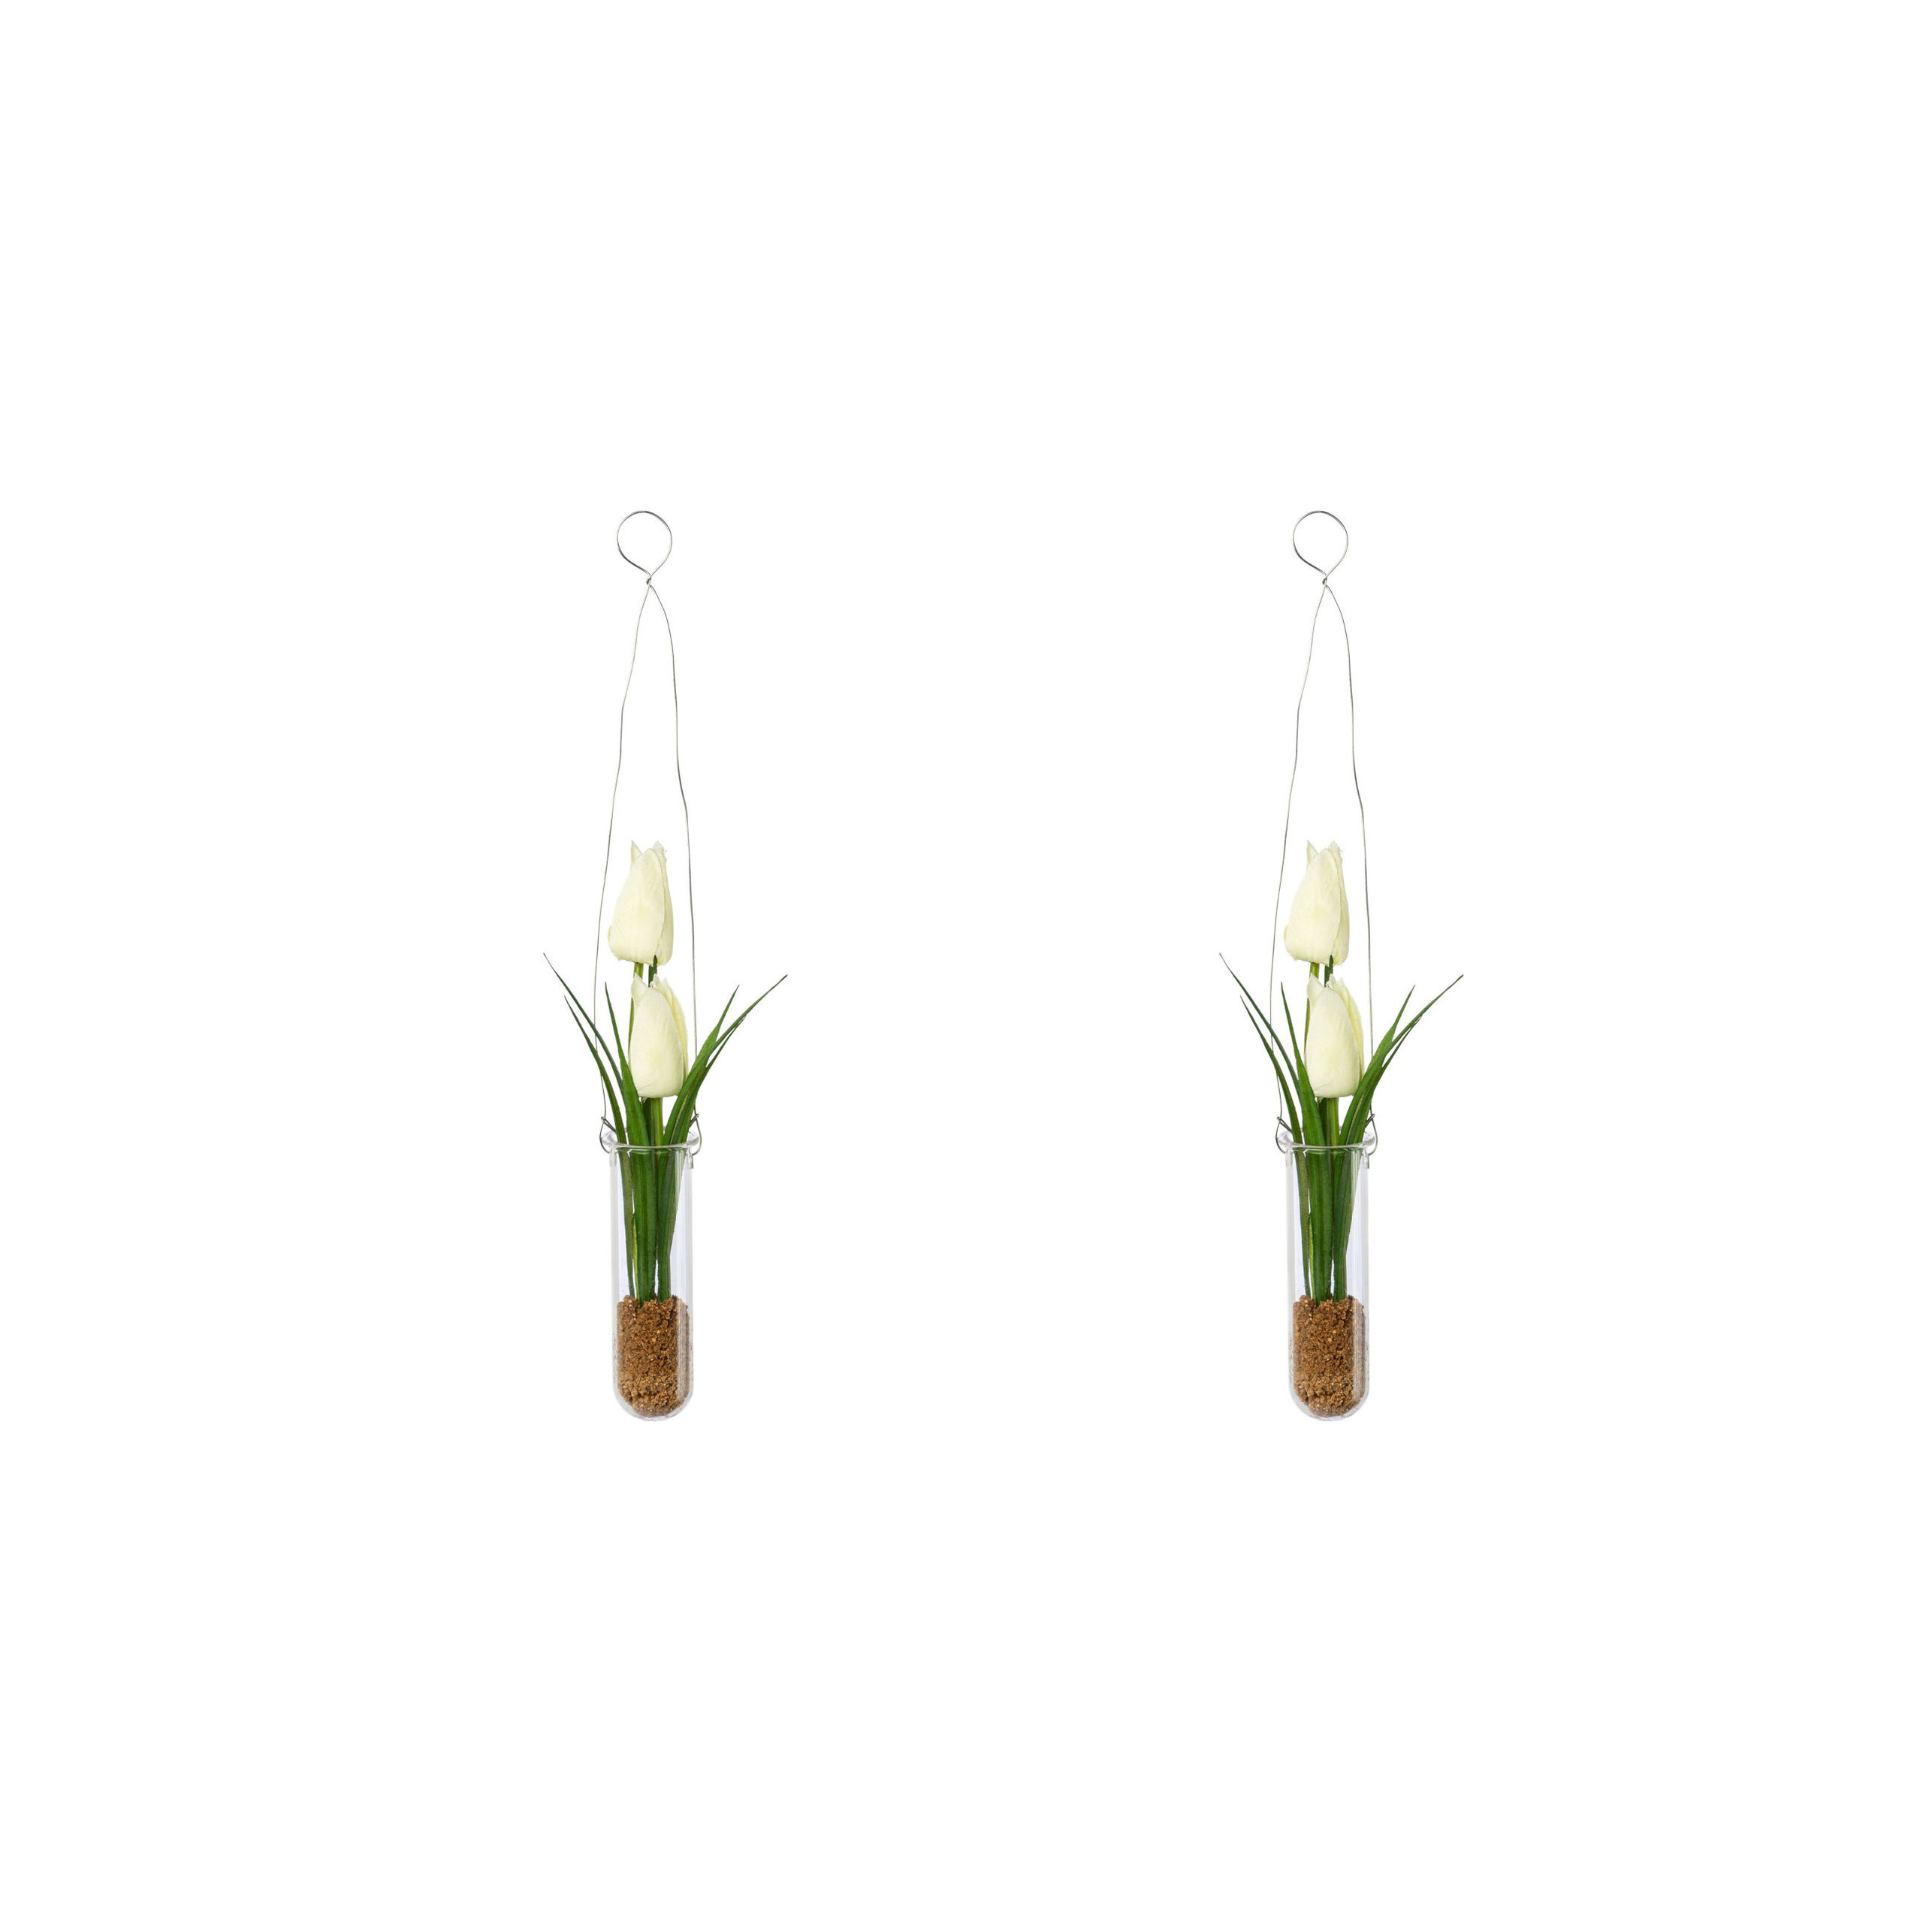 Künstliche Tulpen in Hängevase, 2er-Set Farbe: weiß | Weltbild.de